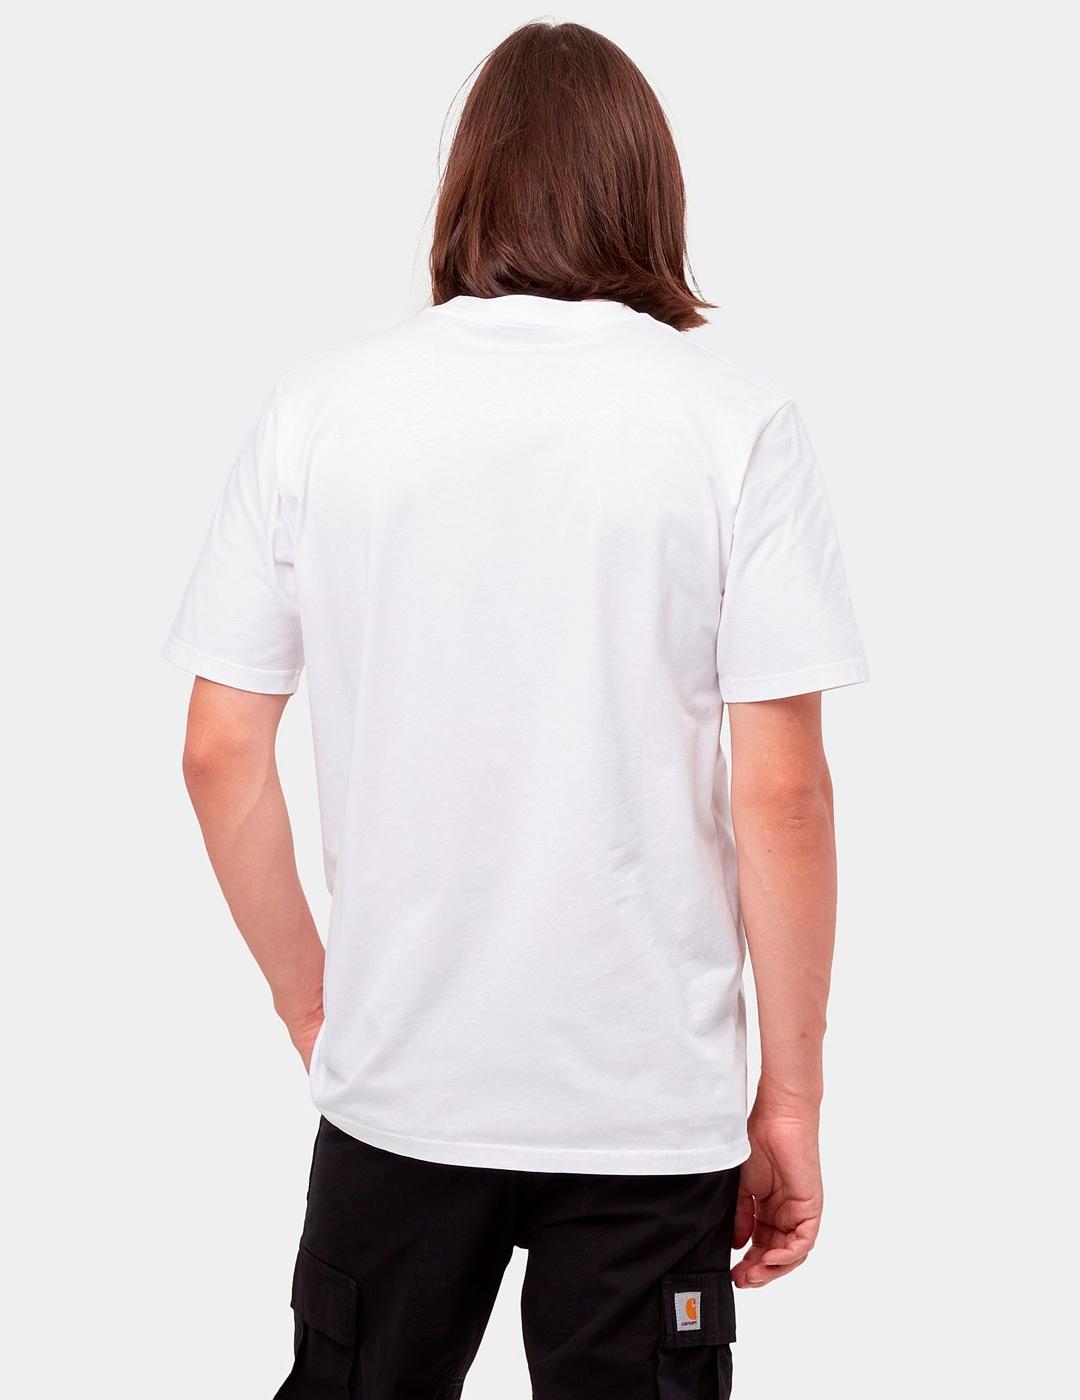 Camiseta CARHARTT SCRIPT - White / Black